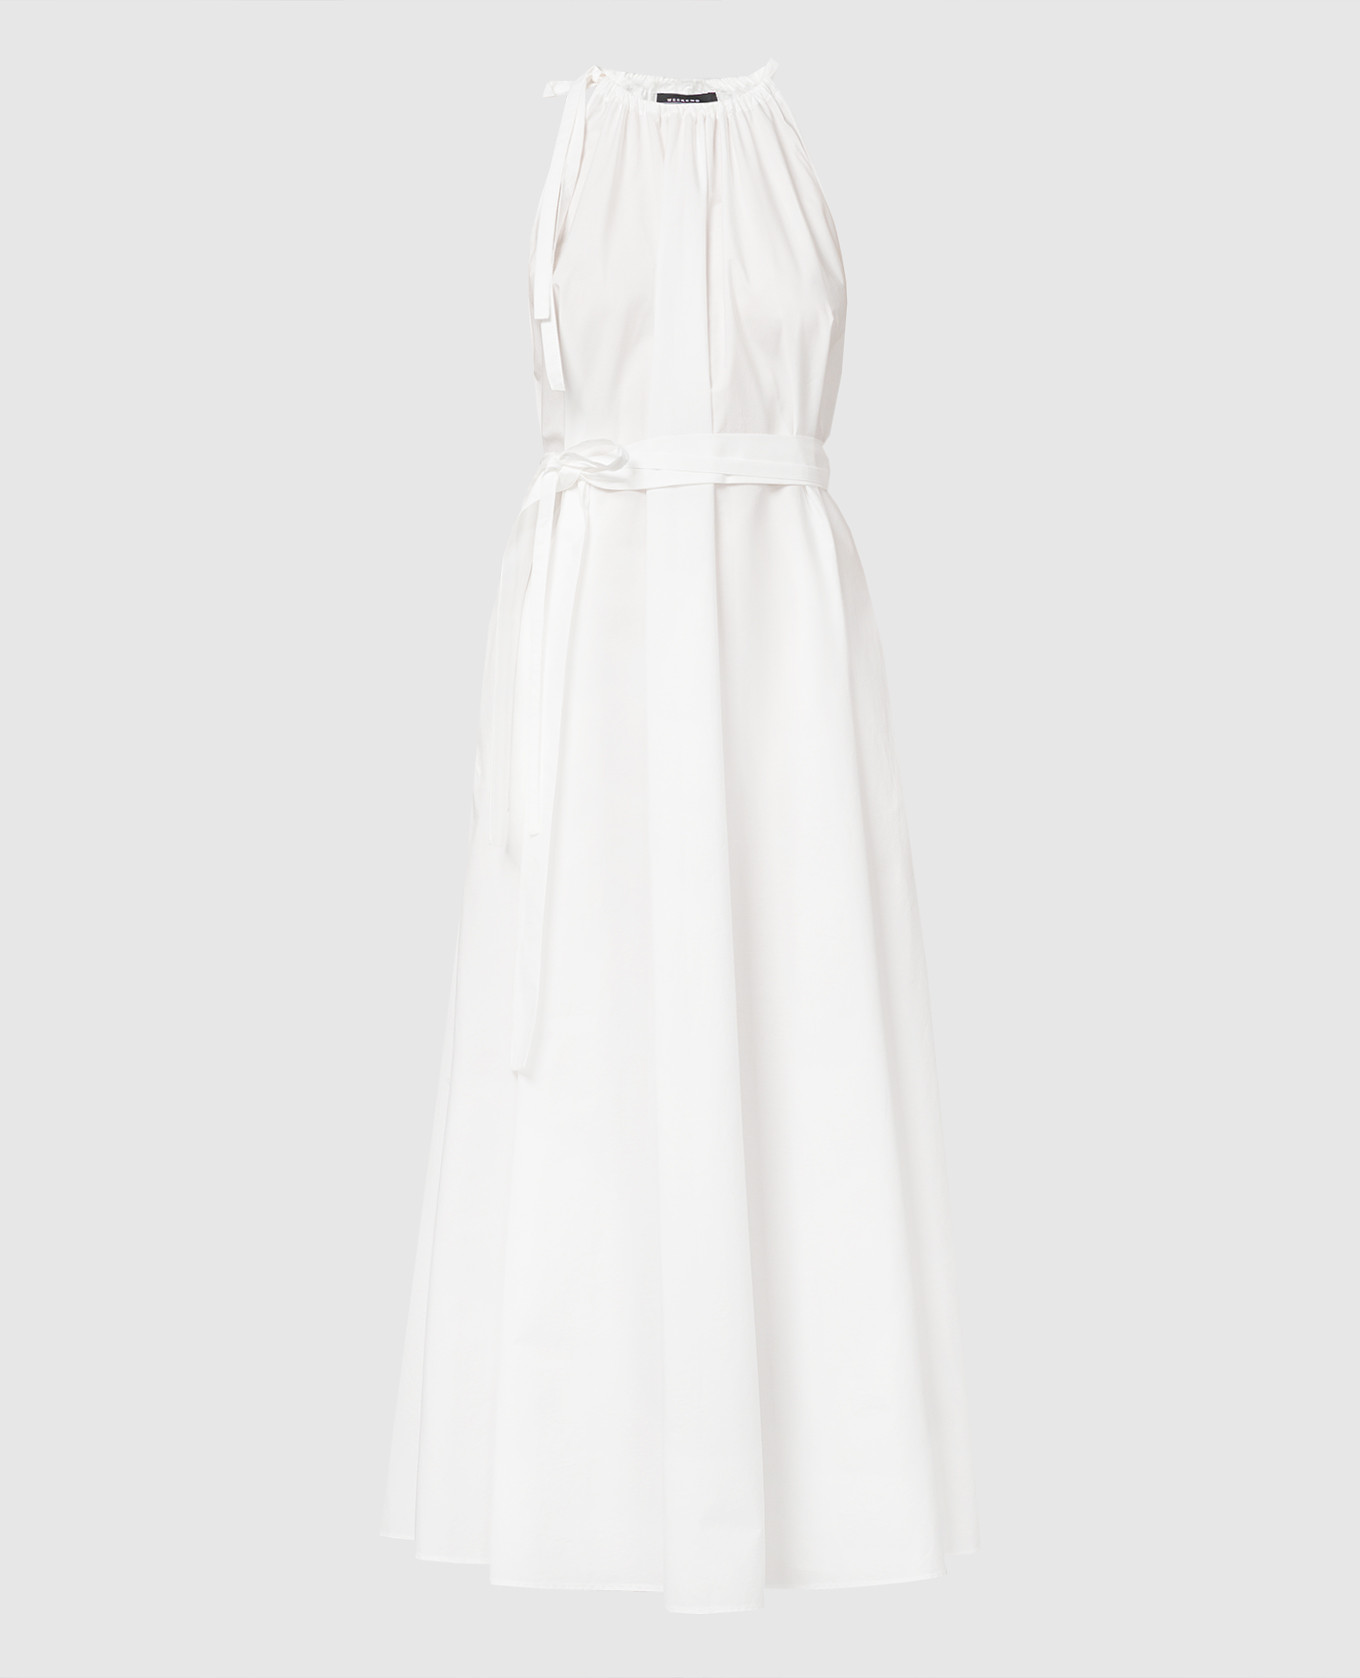 White FIDATO dress